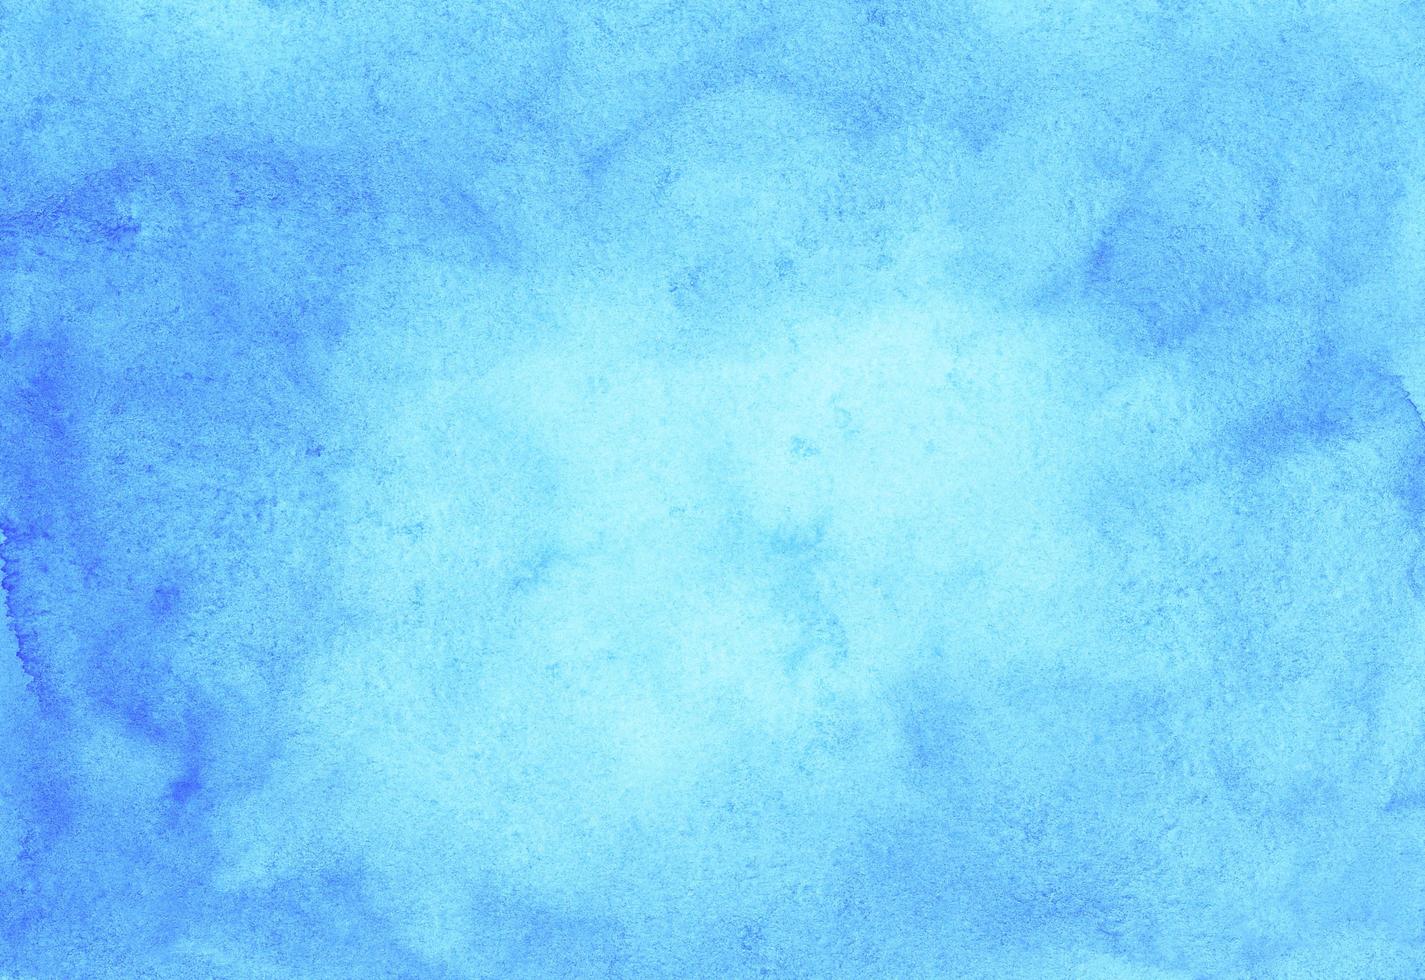 vattenfärg ljus blå bakgrund textur hand målad. vattenfärg himmel blå fläckar på papper. foto